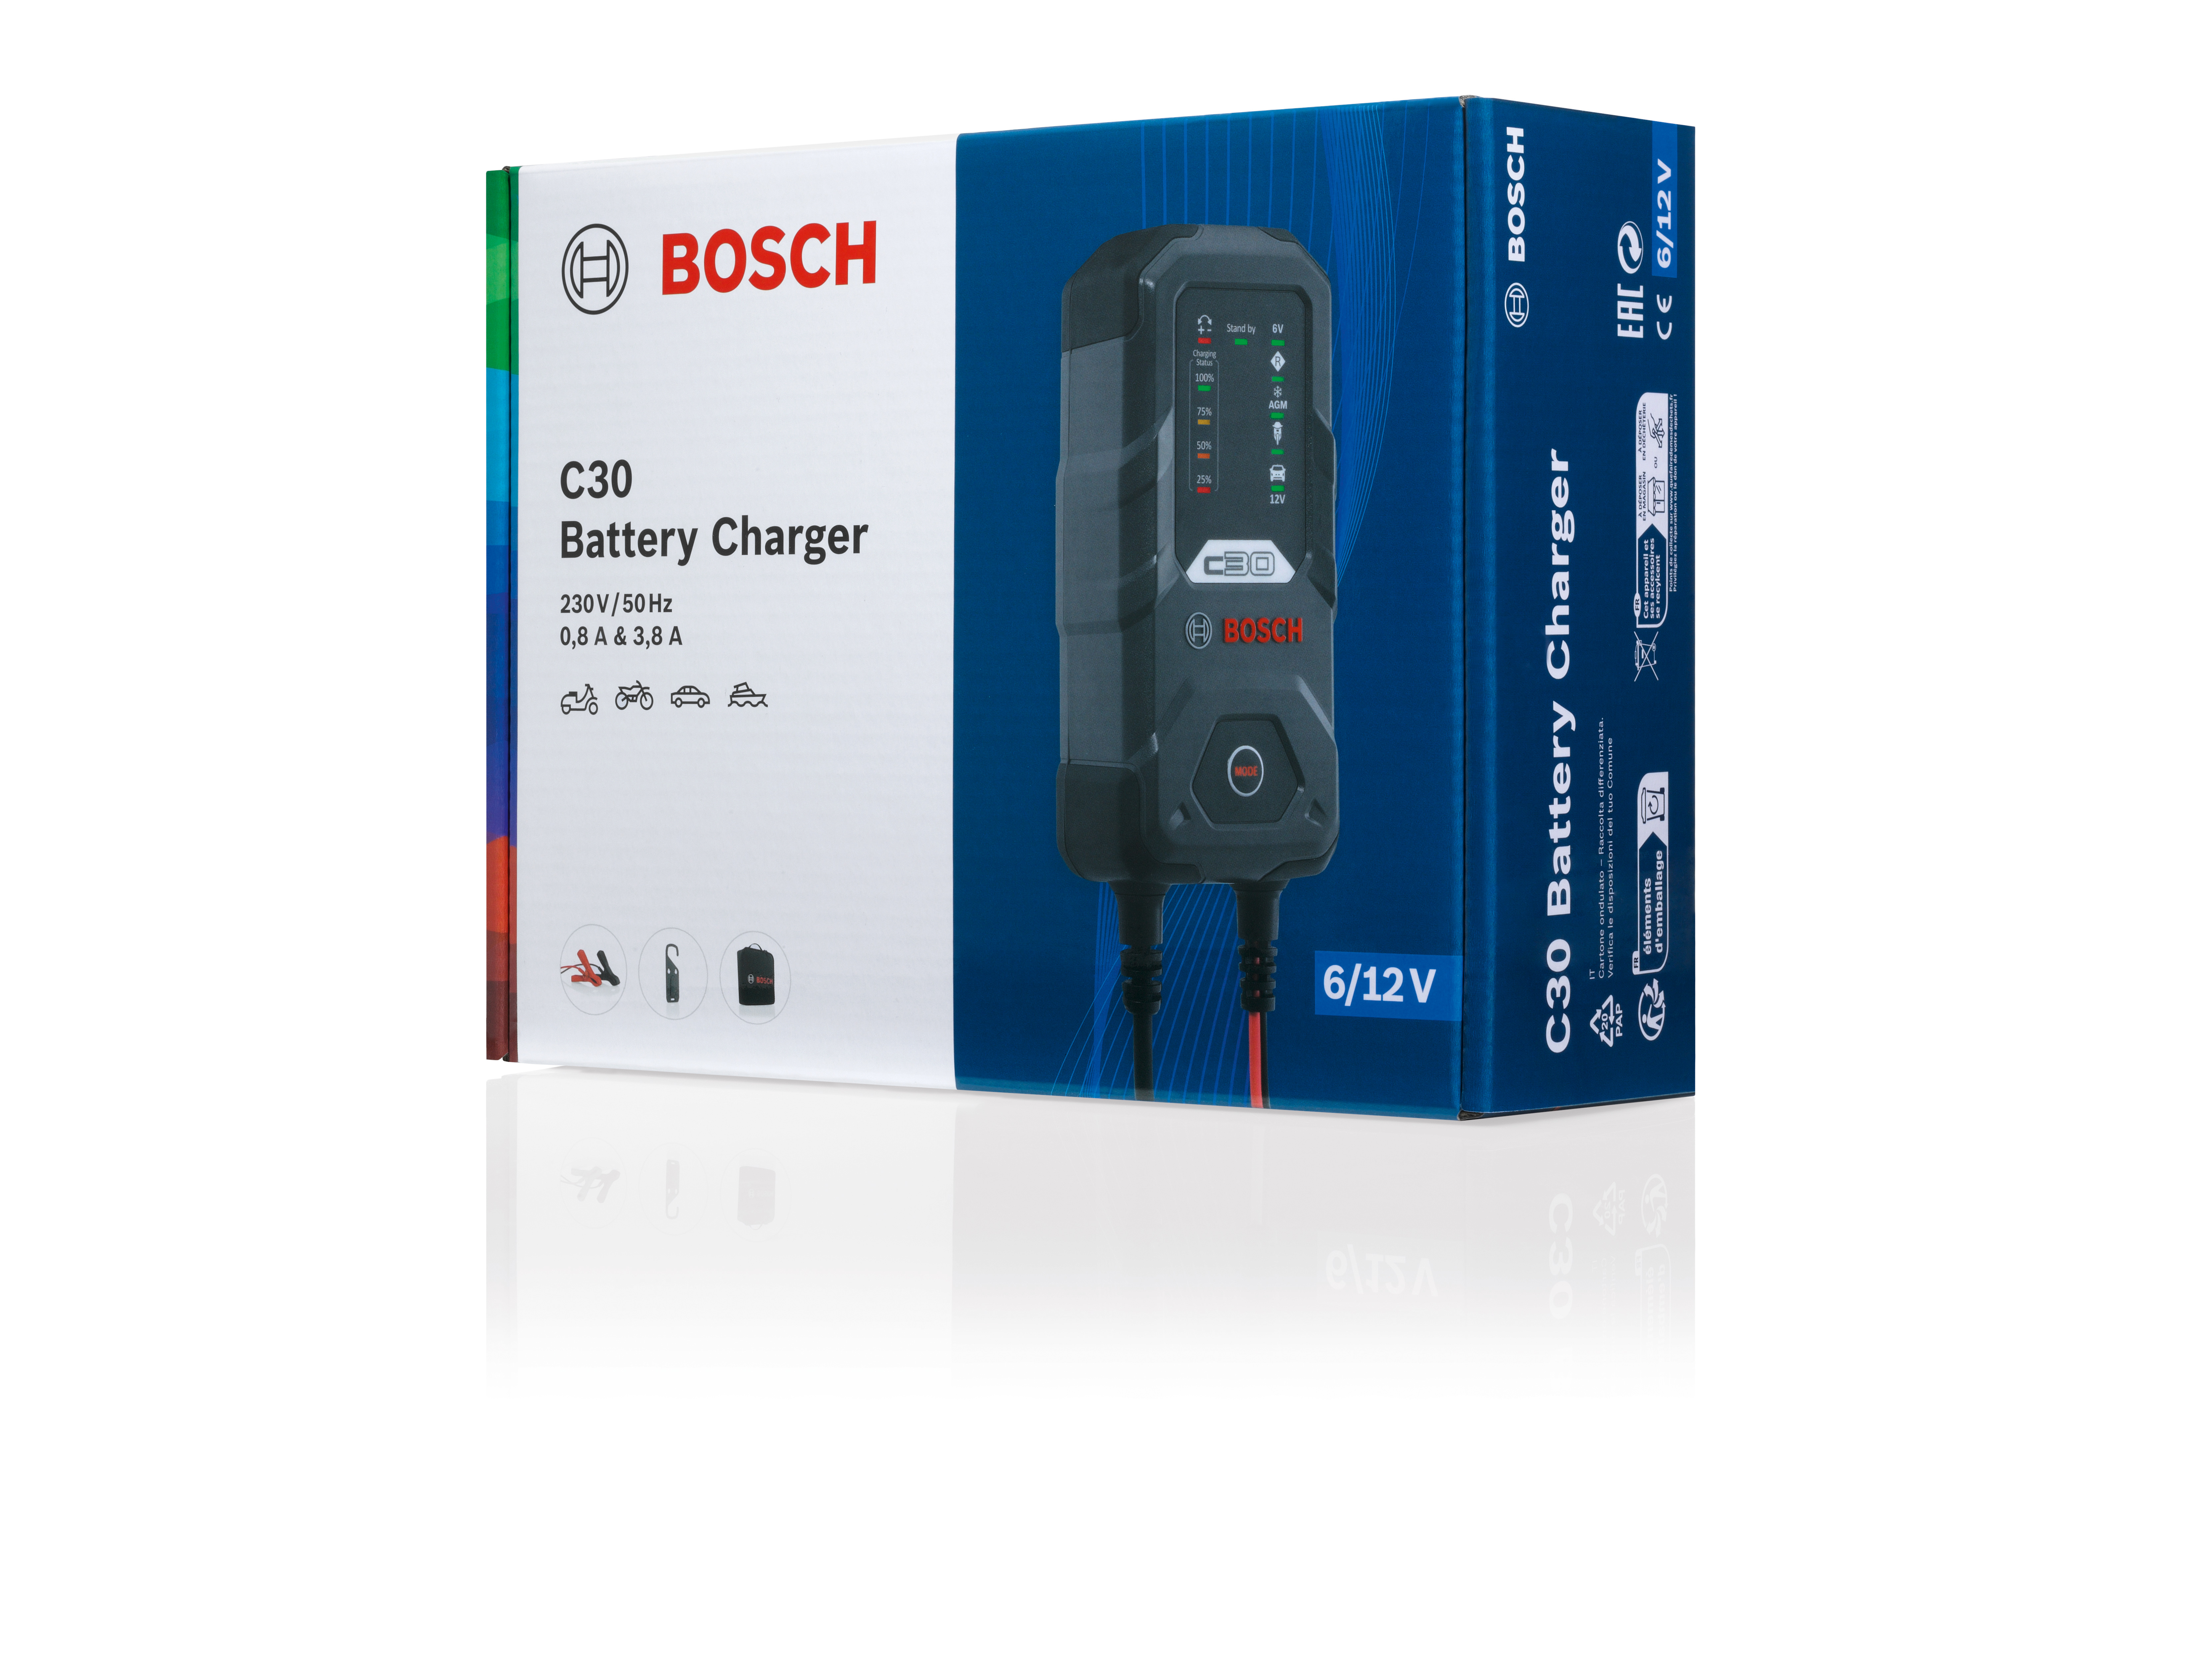 Neue Generation von Bosch Batterieladegeräten mit höherer Leistung und  erweitertem Funktionsumfang - Bosch Media Service